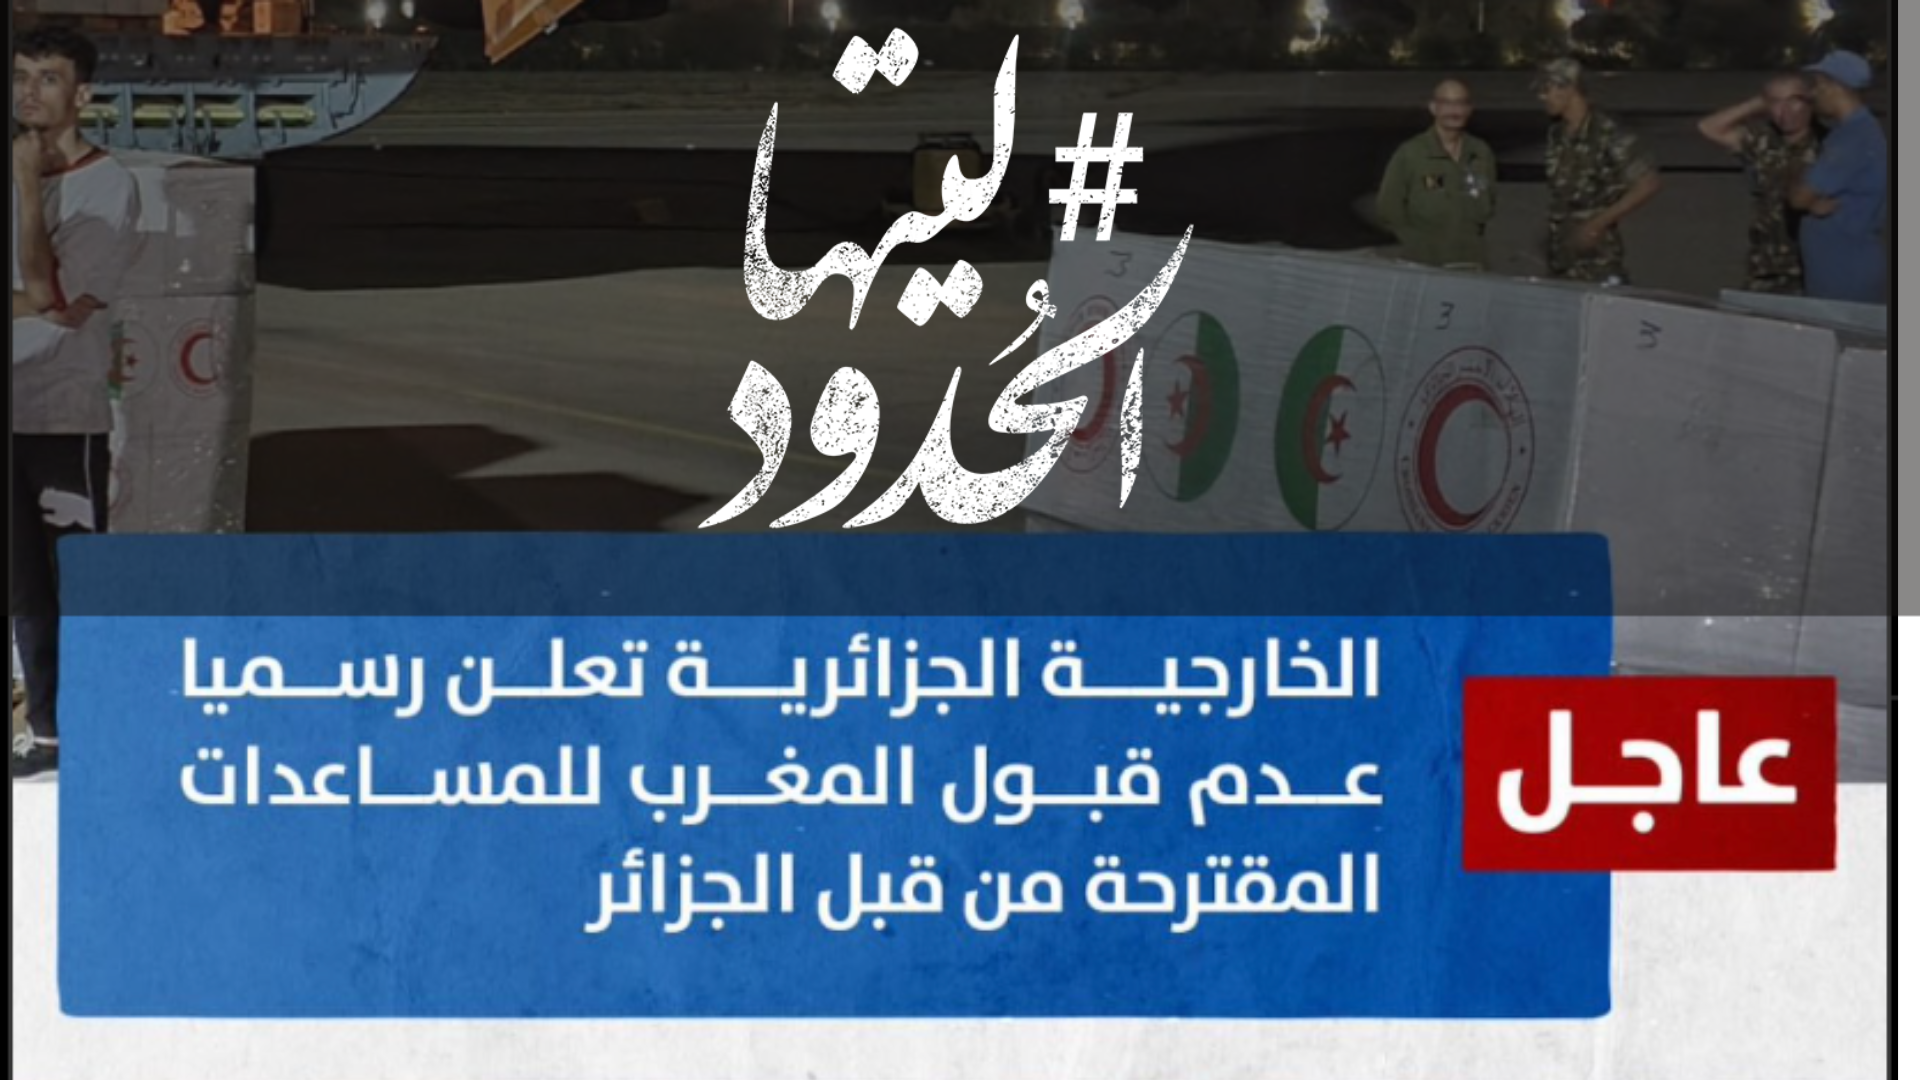 صورة الخارجية الجزائرية تعلن عدم قبول المغرب للمساعدات المقترحة من قبل الجزائر